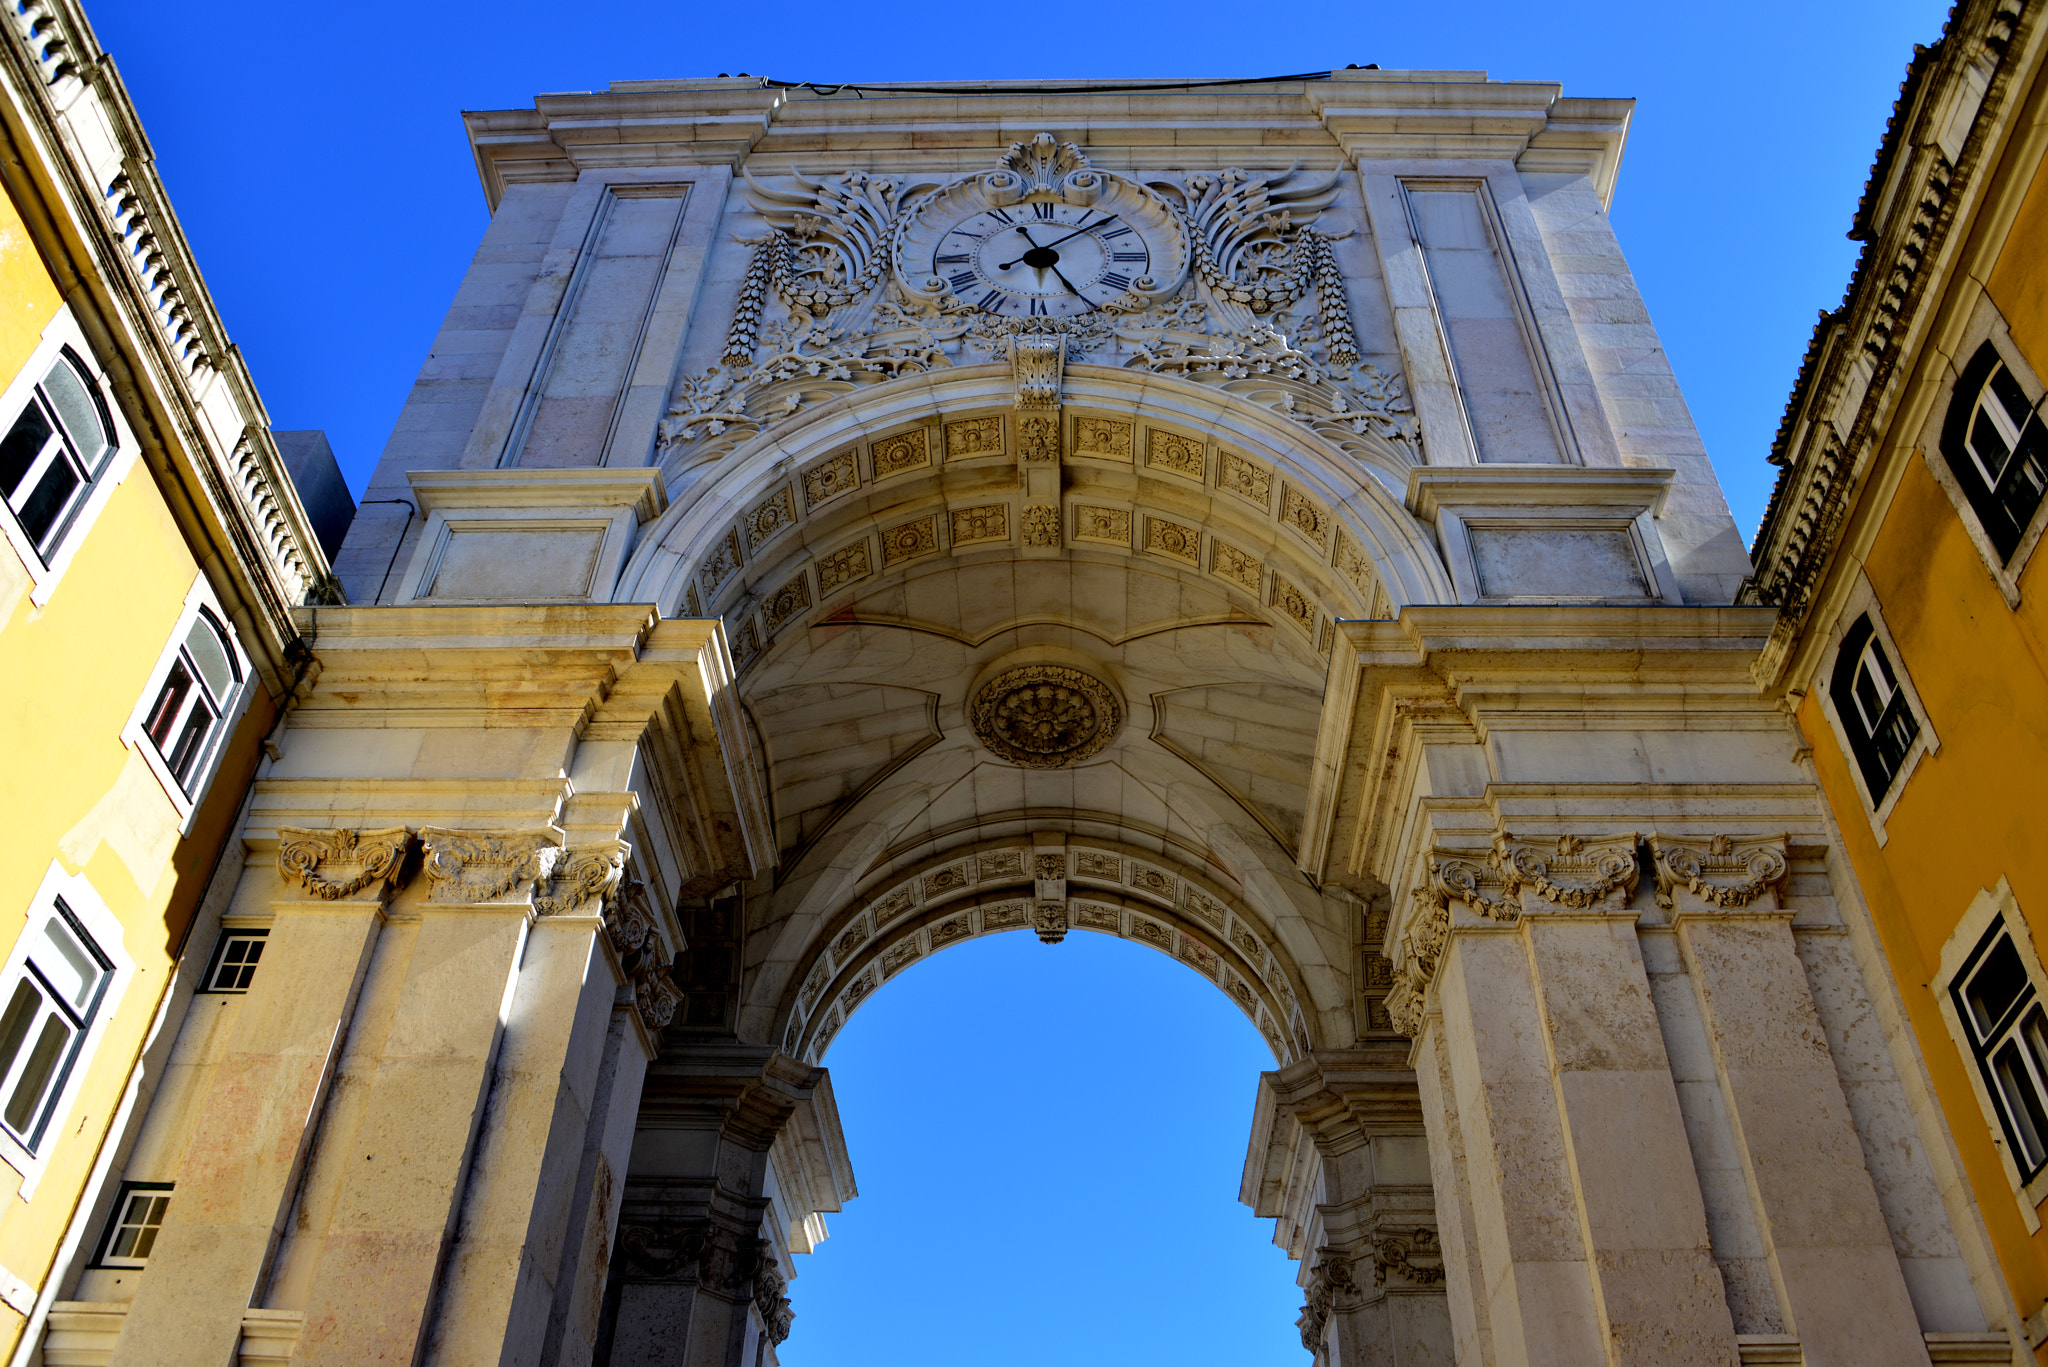 Arco da Rua Augusta in Lisbon